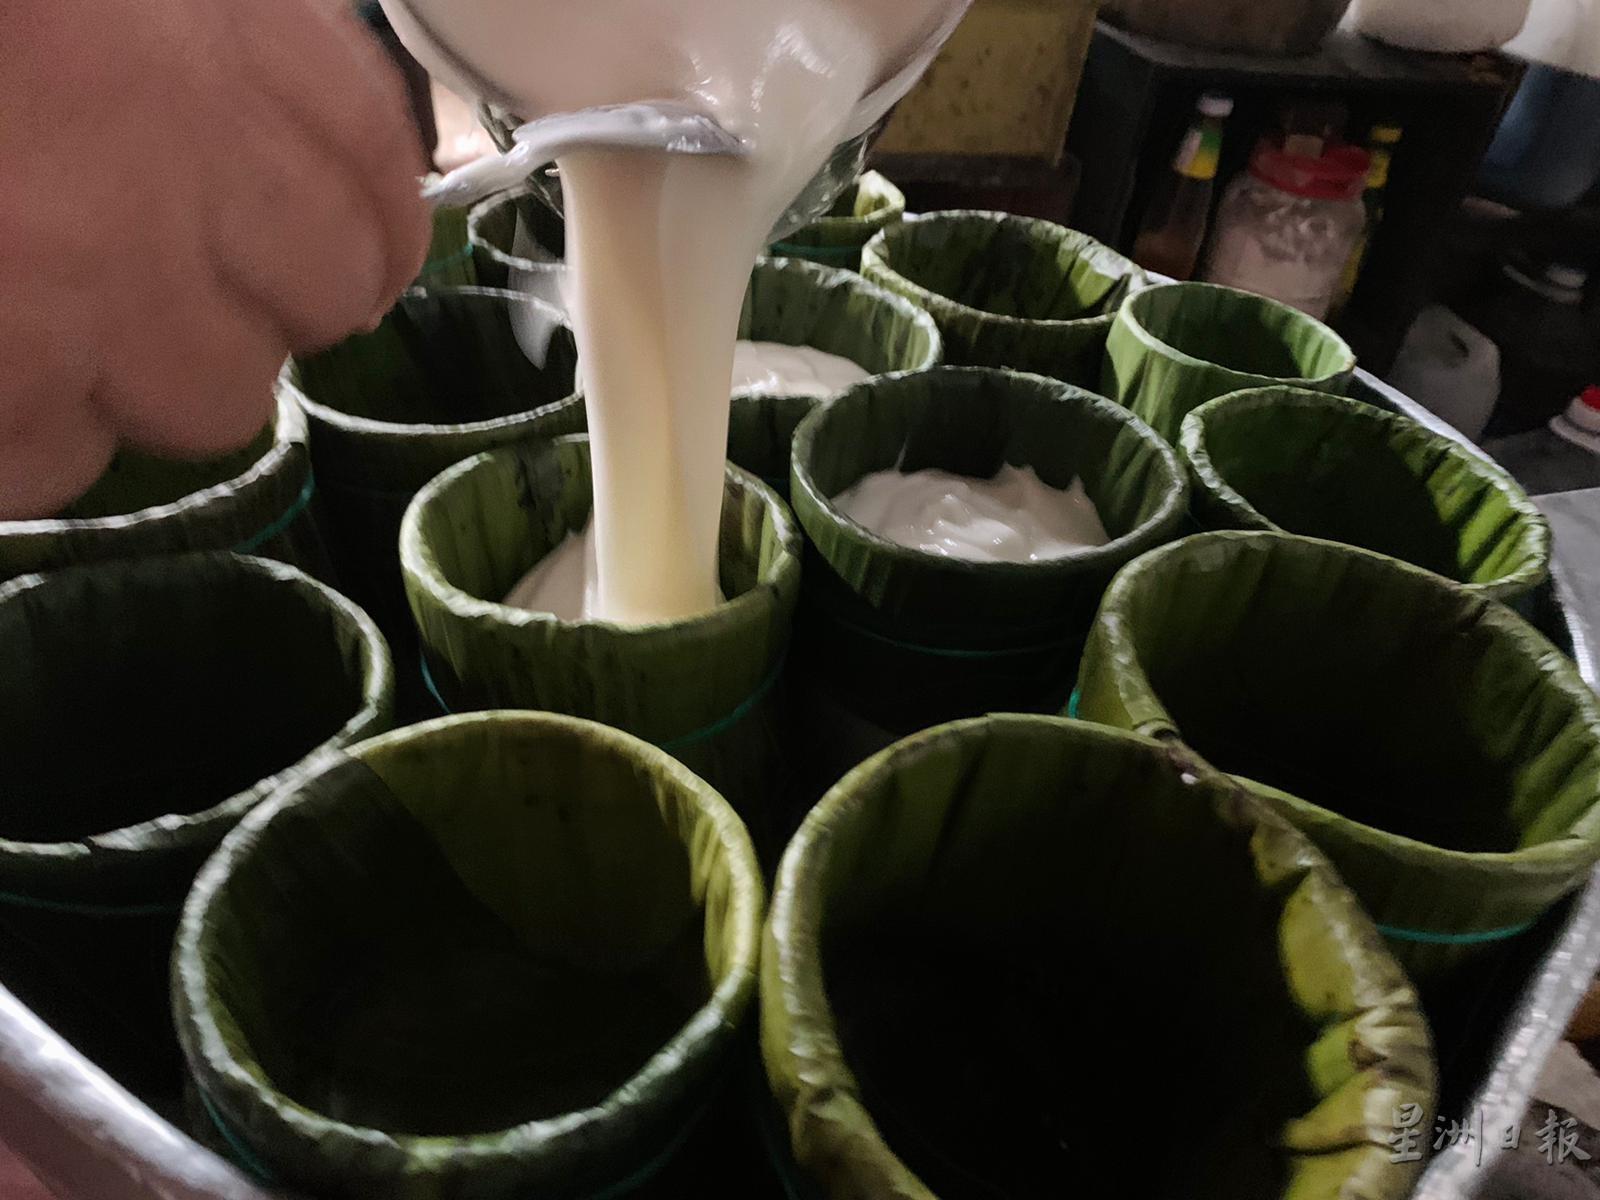 把糯米浆倒进铺好香蕉叶的容器，再放进蒸笼内蒸熟。